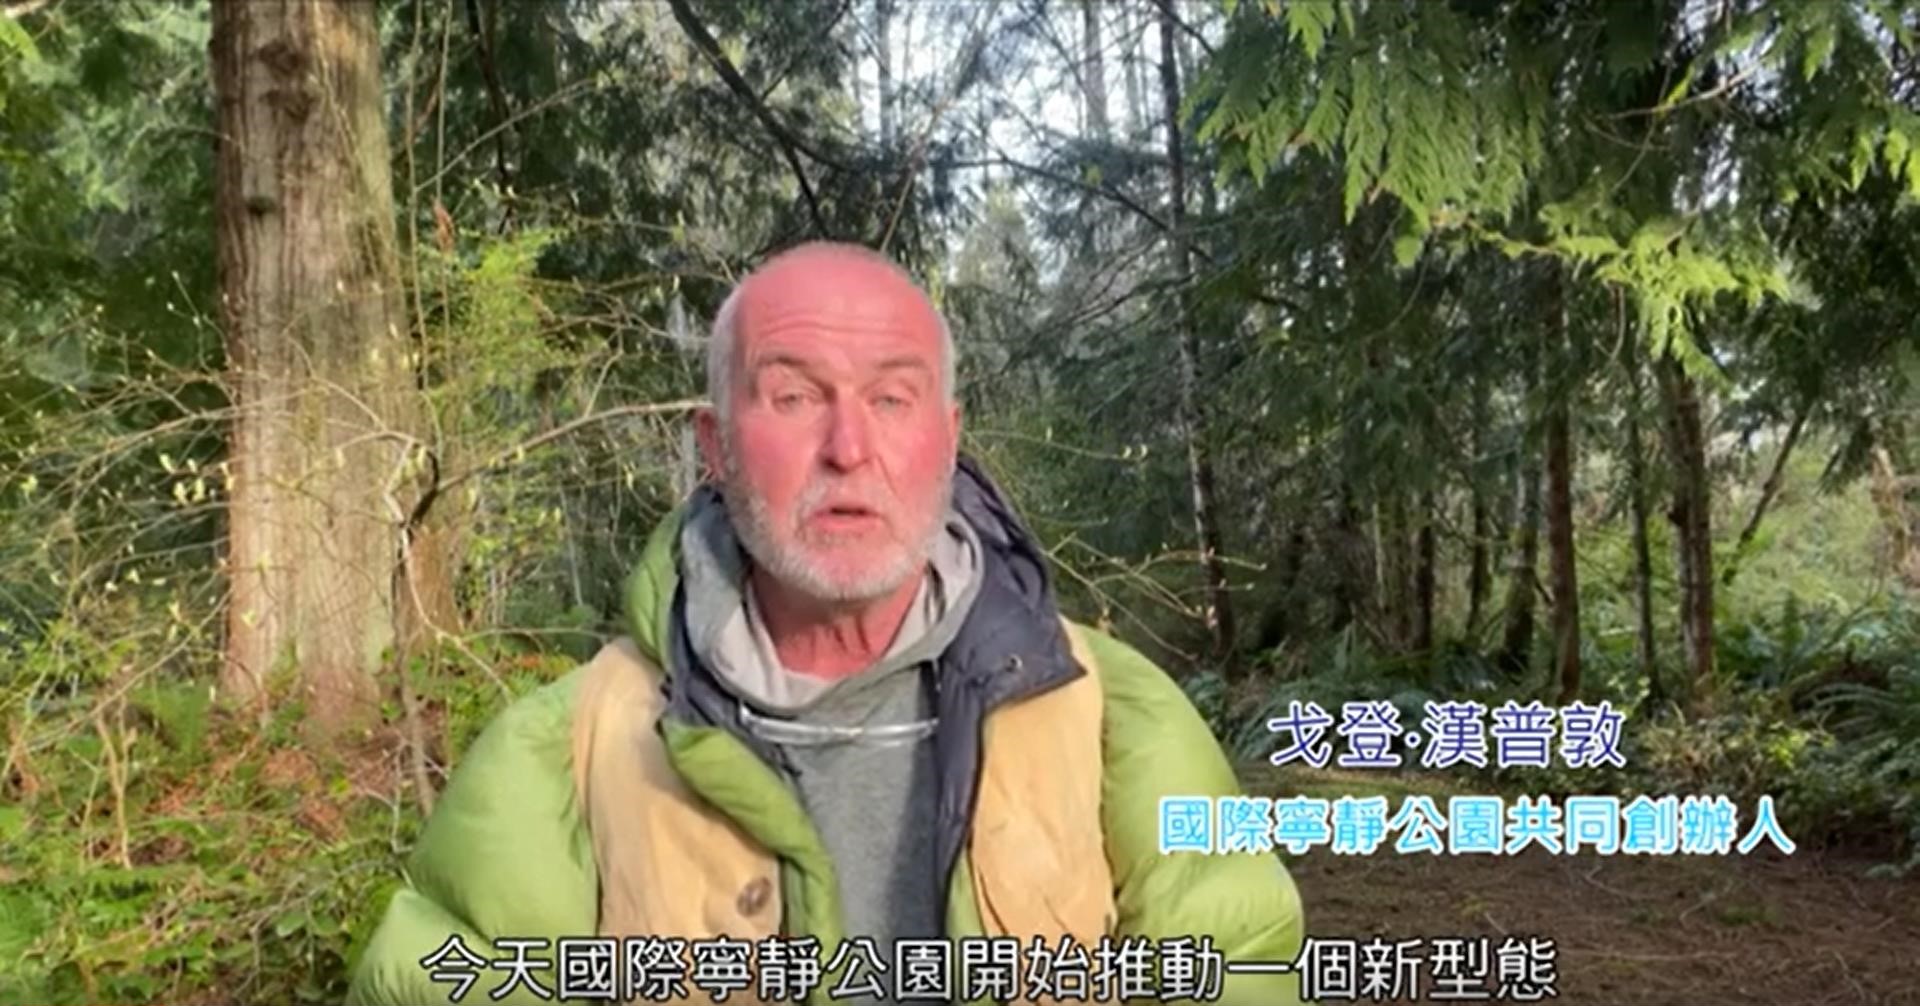 [推薦影片]戈登·漢普頓祝賀翠峰湖環山步道成為全球首條寧靜步道